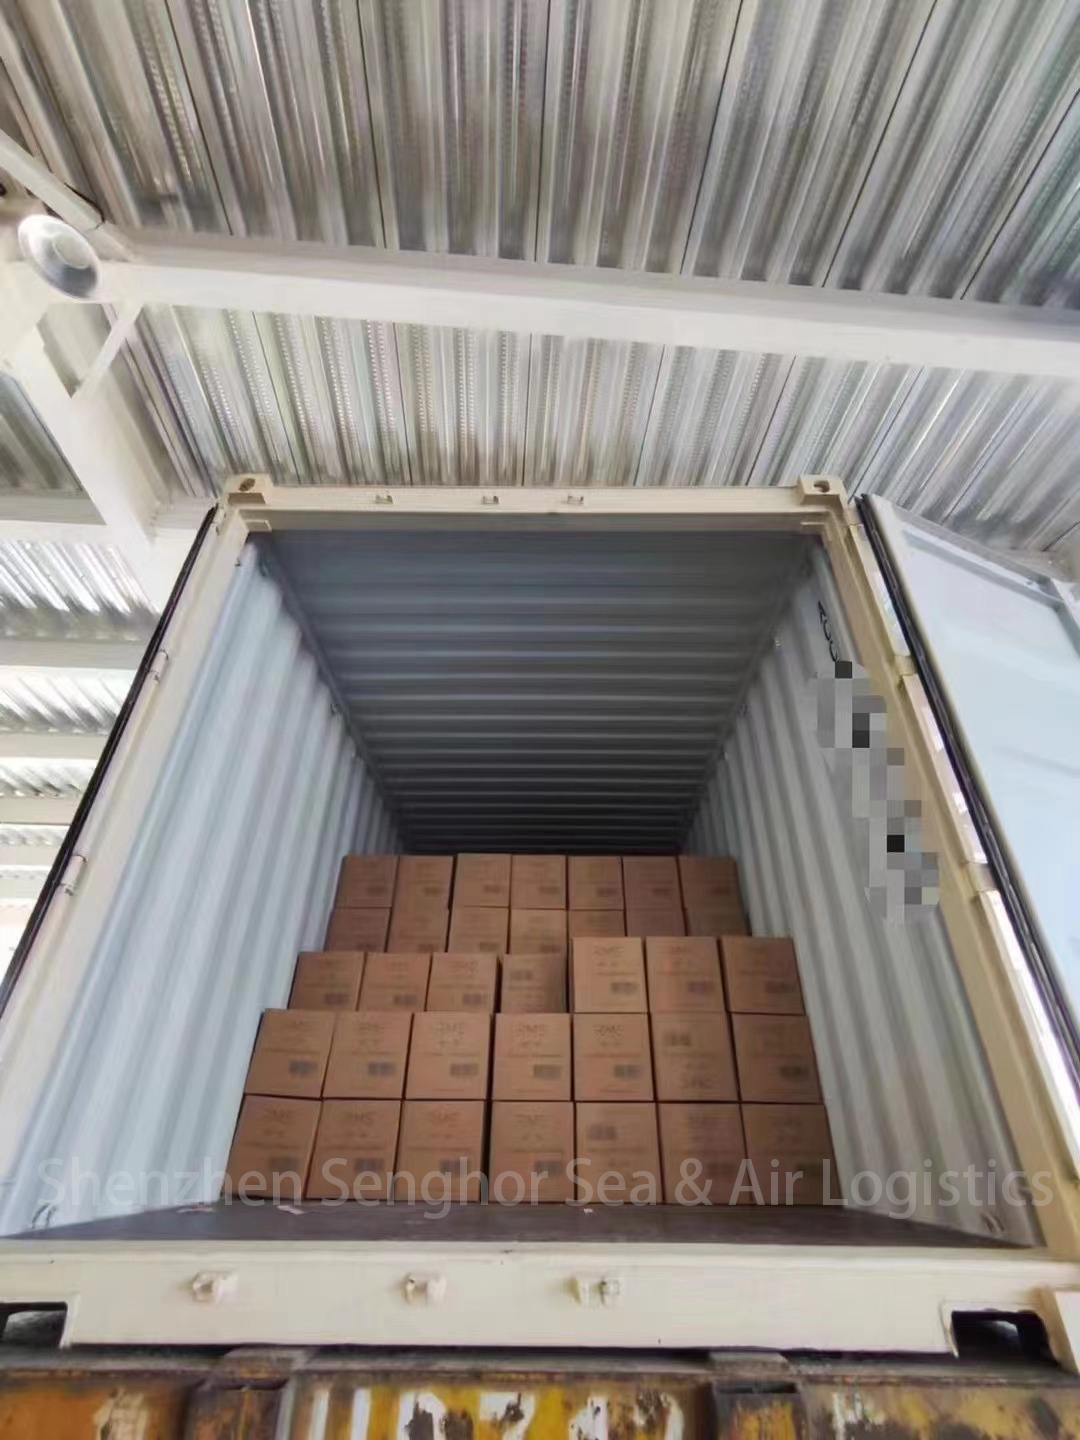 Senghor Logistics shipping kuchokera ku china cargo service